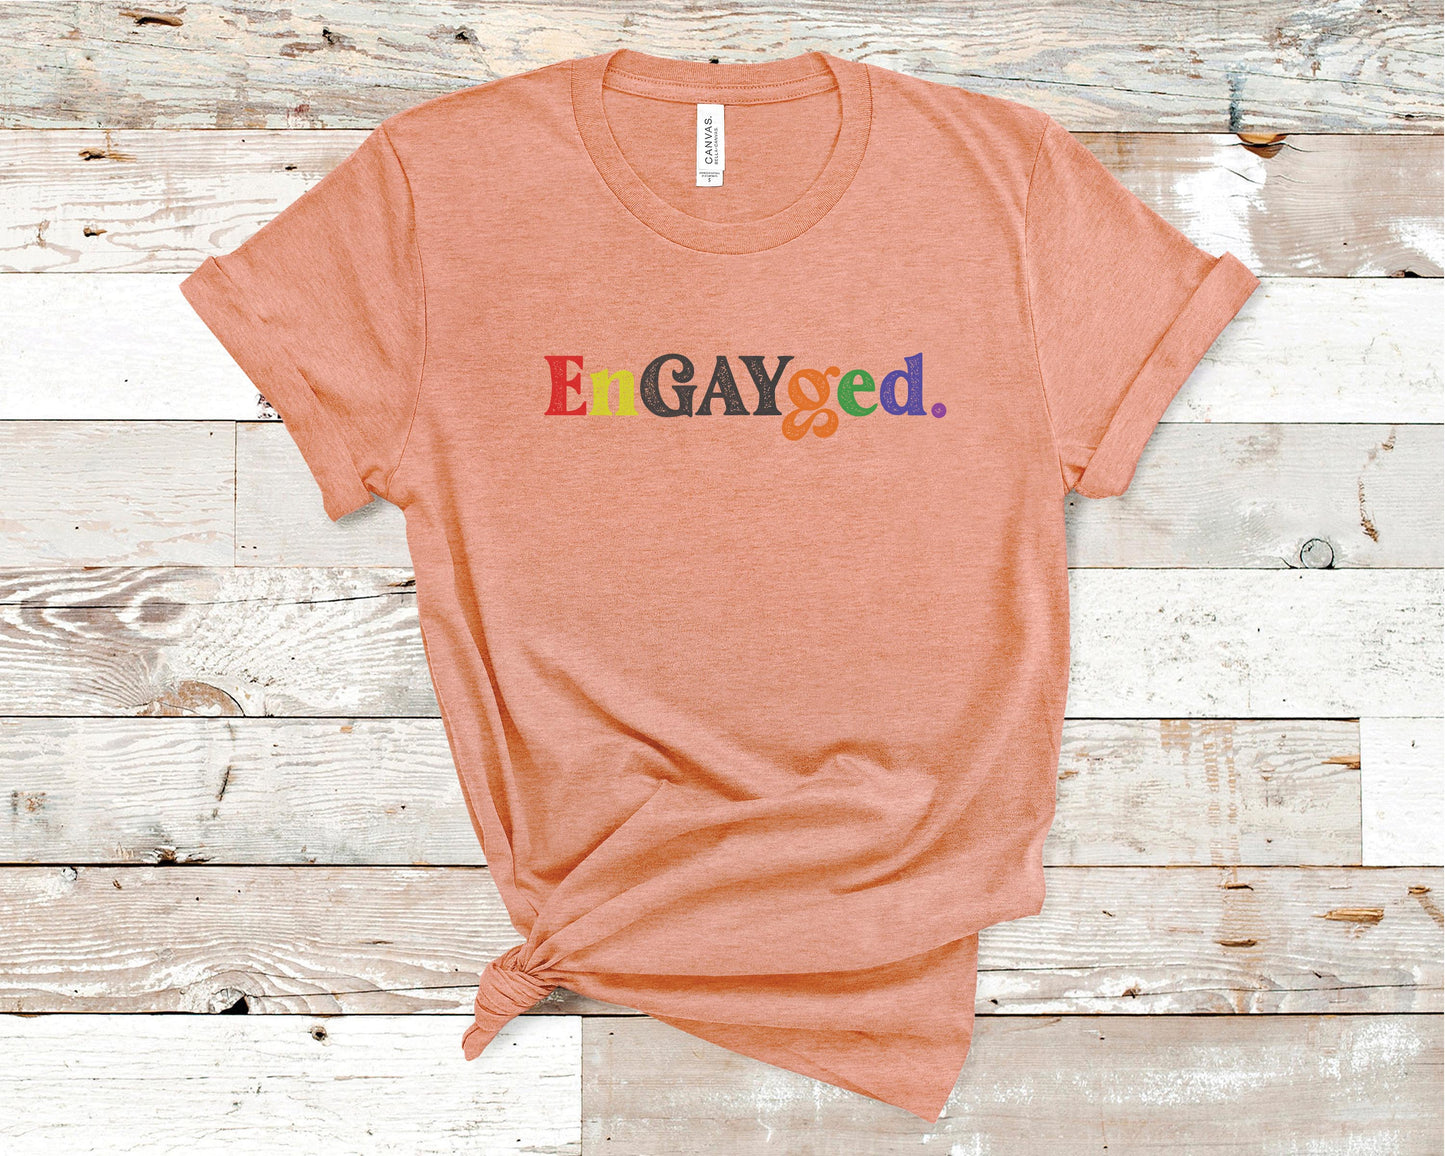 EnGAYged - LGBTQ